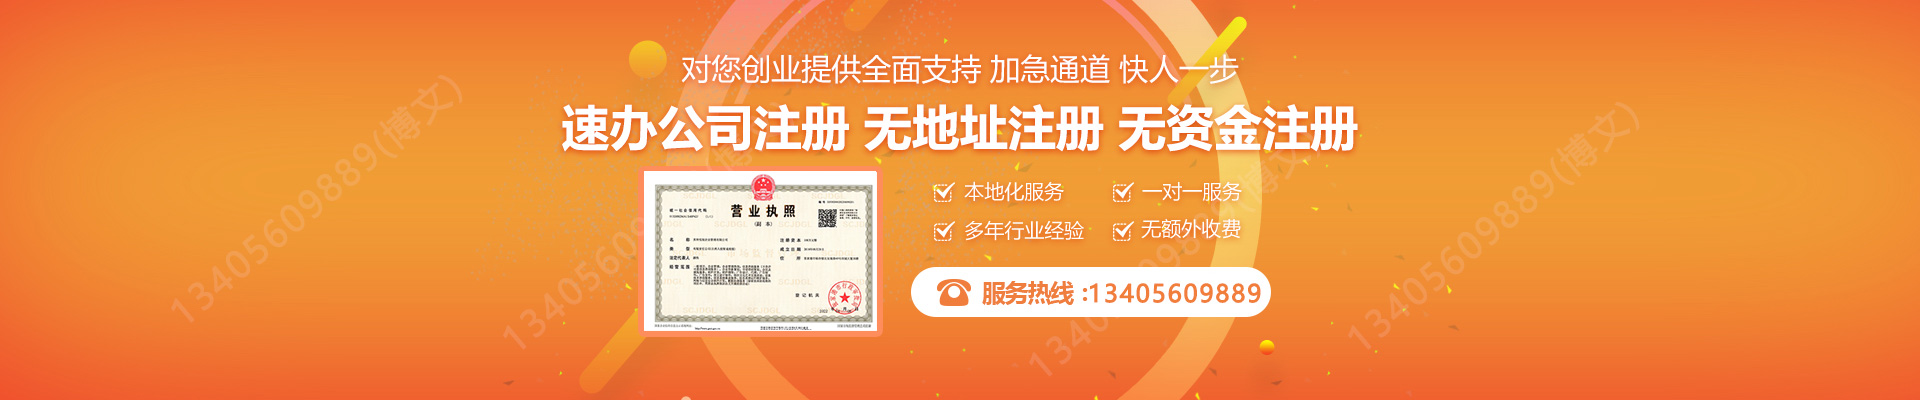 惠城注册公司网